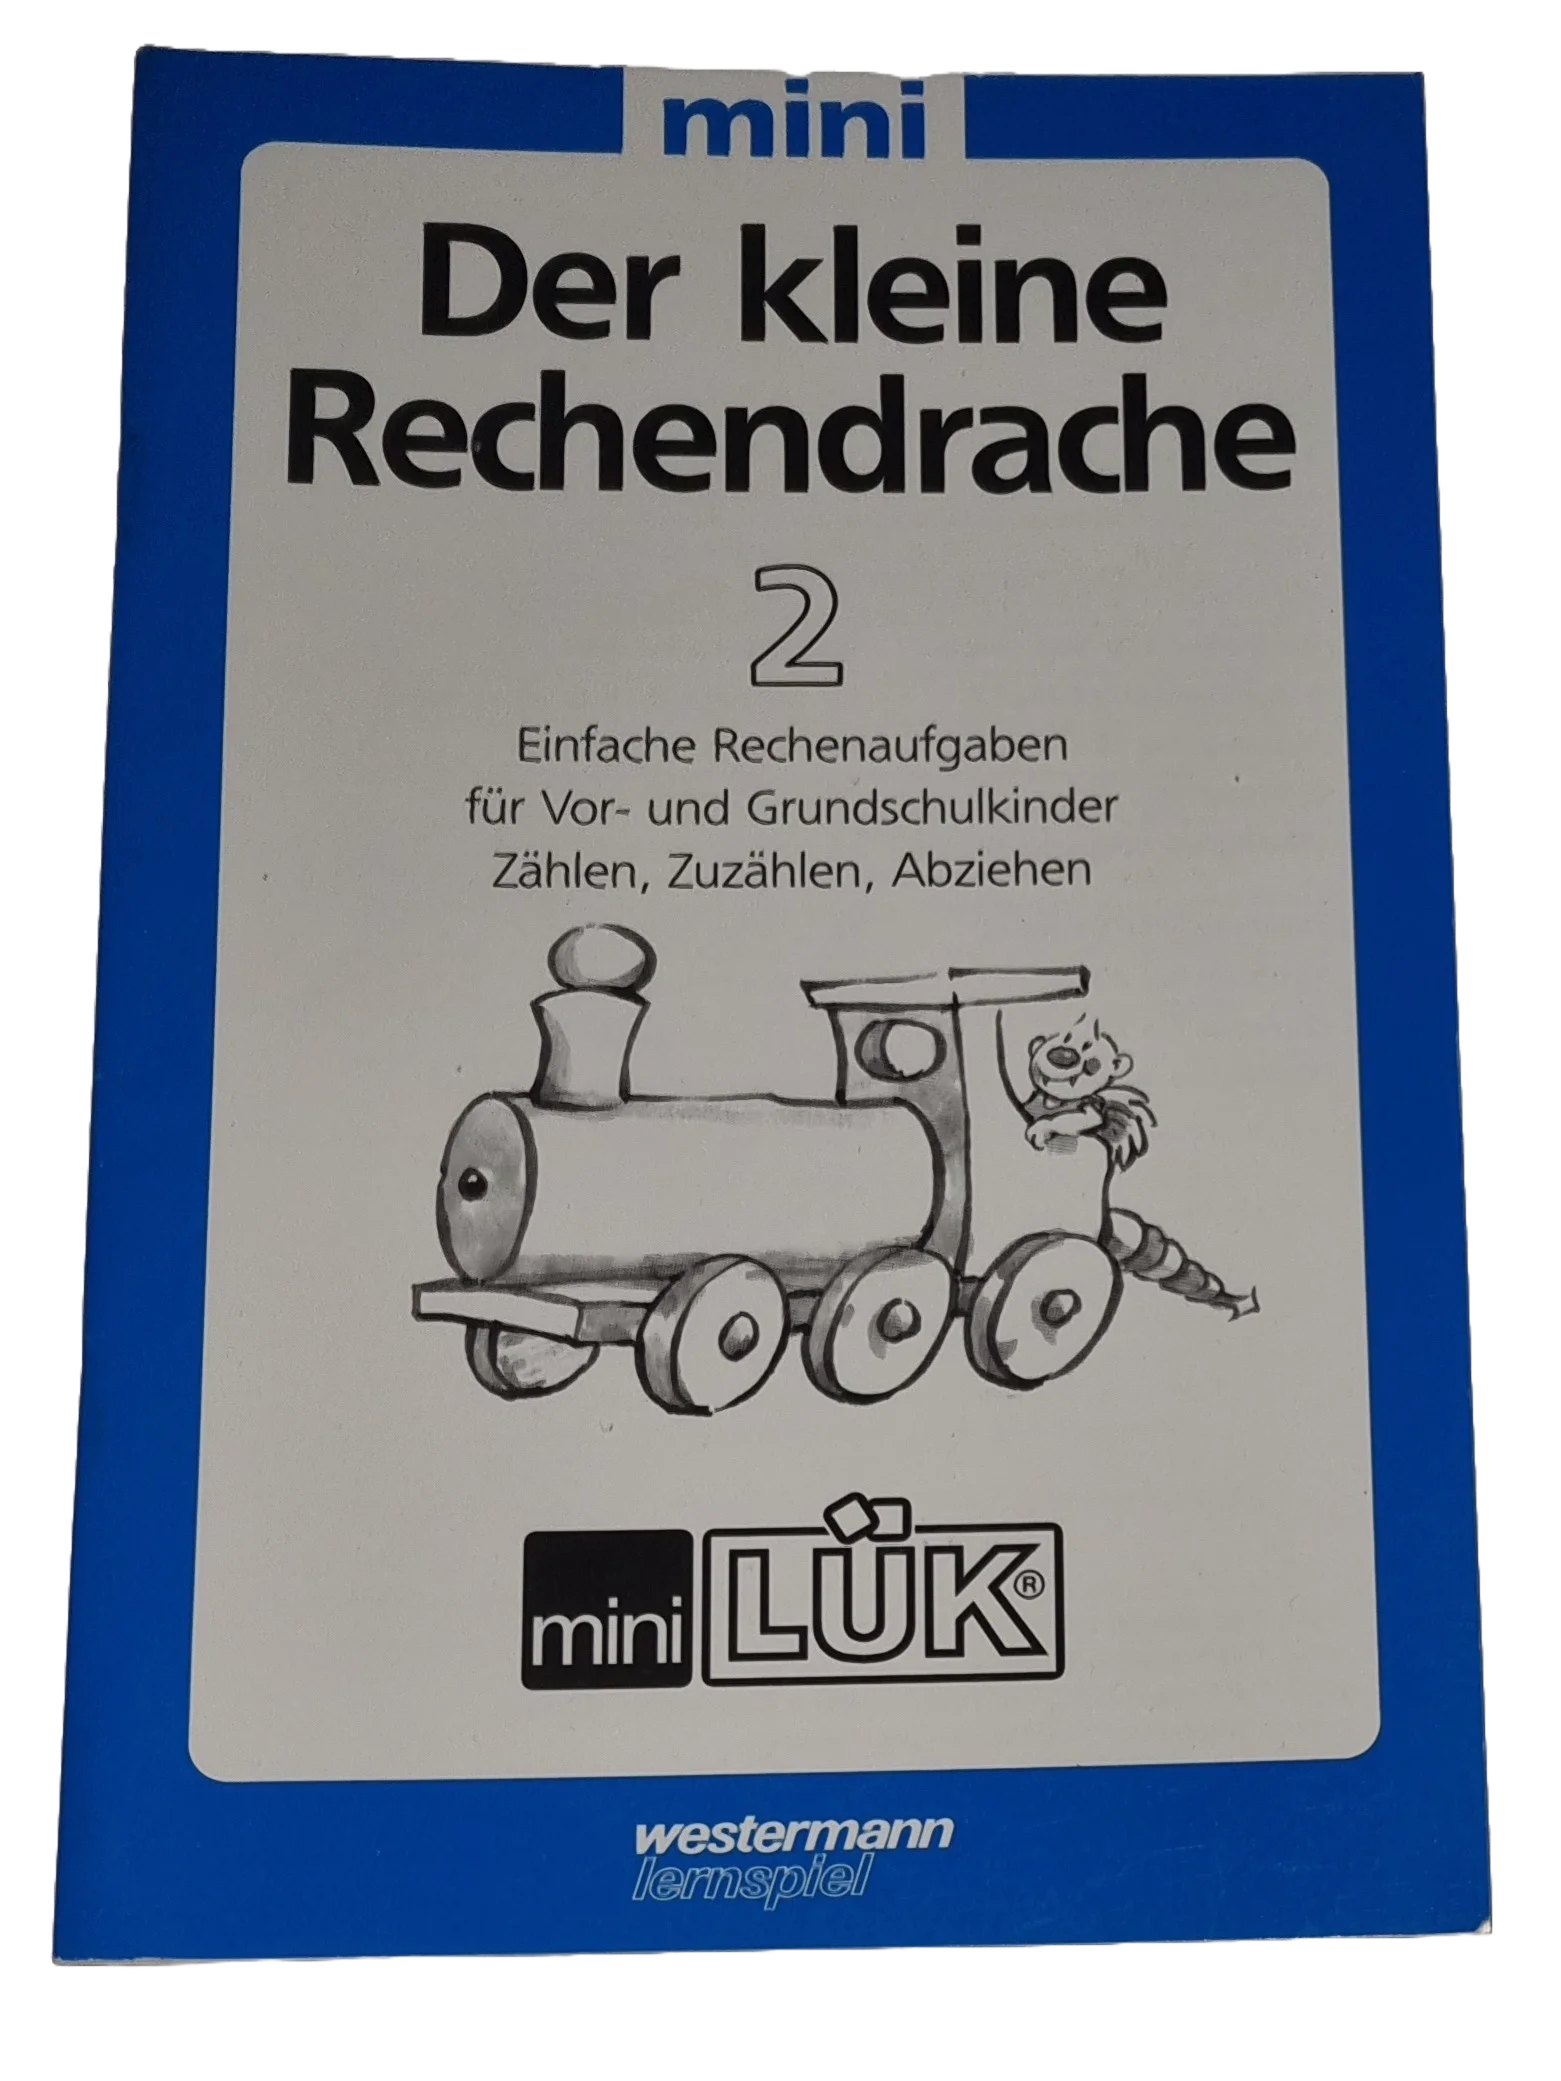 Mini Lük Der kleine Rechendrache 2 Einfache Rechenaufgaben für Vor- und Grundschulkinder